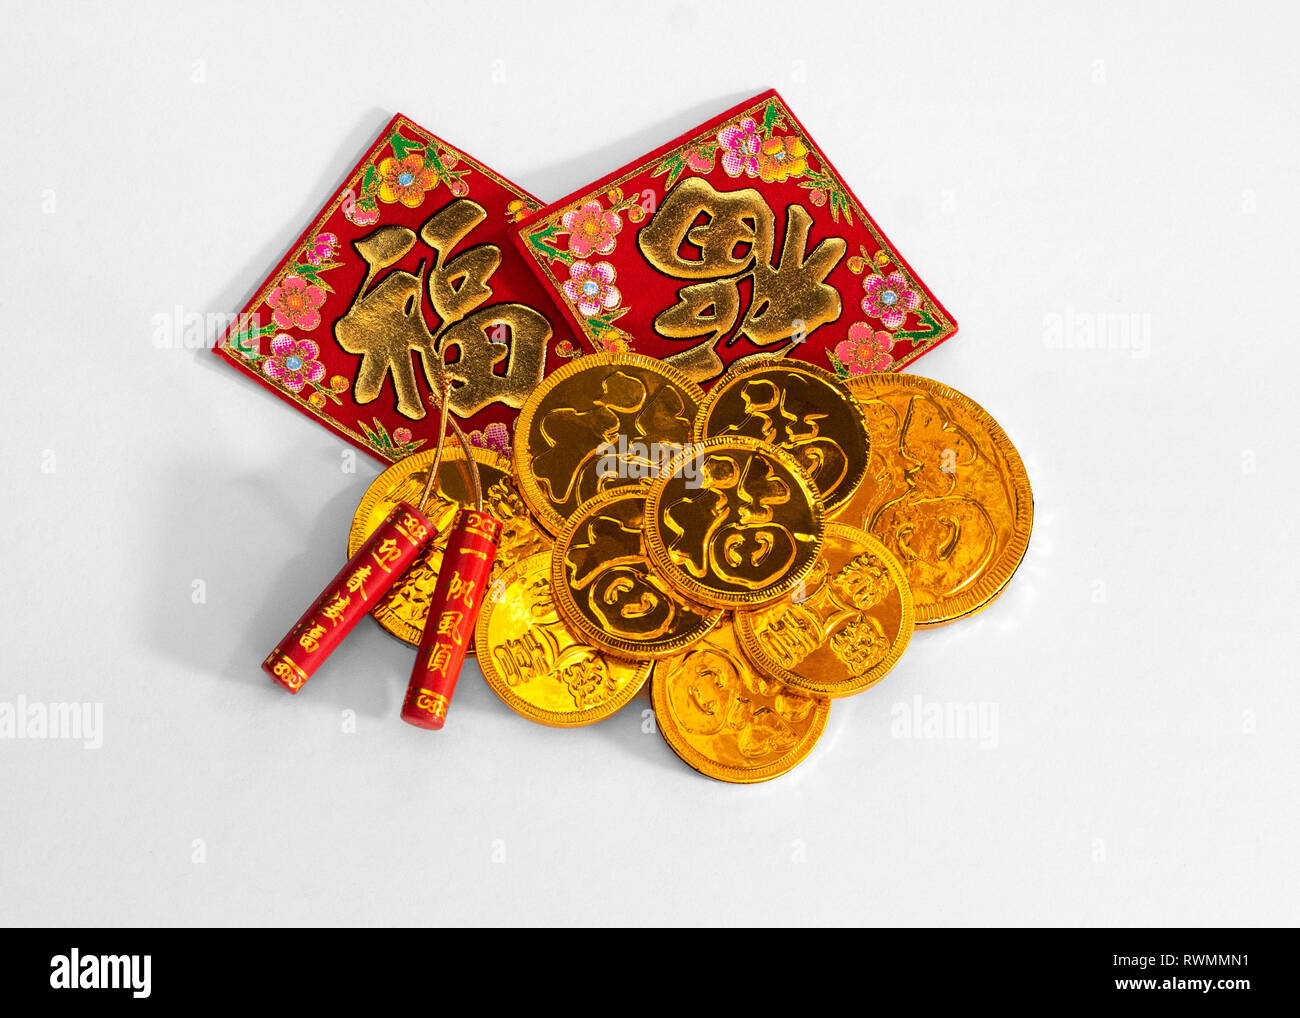 Chinesisches Neues Jahr Schokolade Glück Gold Münzen - chinesische Wörter: Vermögen. Umgekehrt Wort Vermögen bedeutet 'Fortune'. Stockfoto